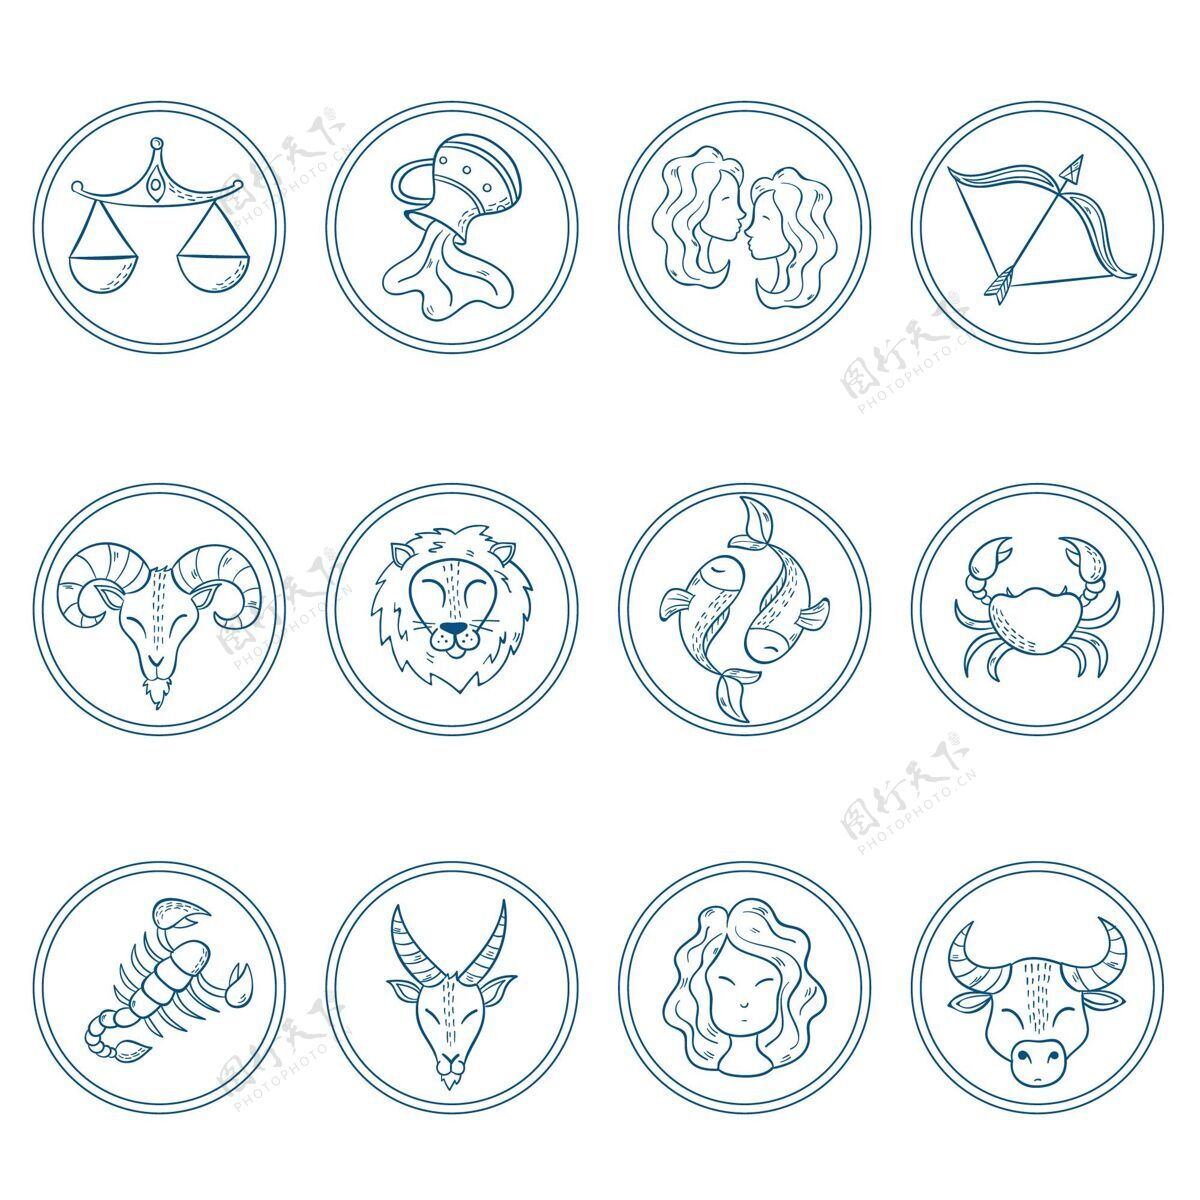 符号十二生肖雕刻收藏标志和符号宇宙占星术